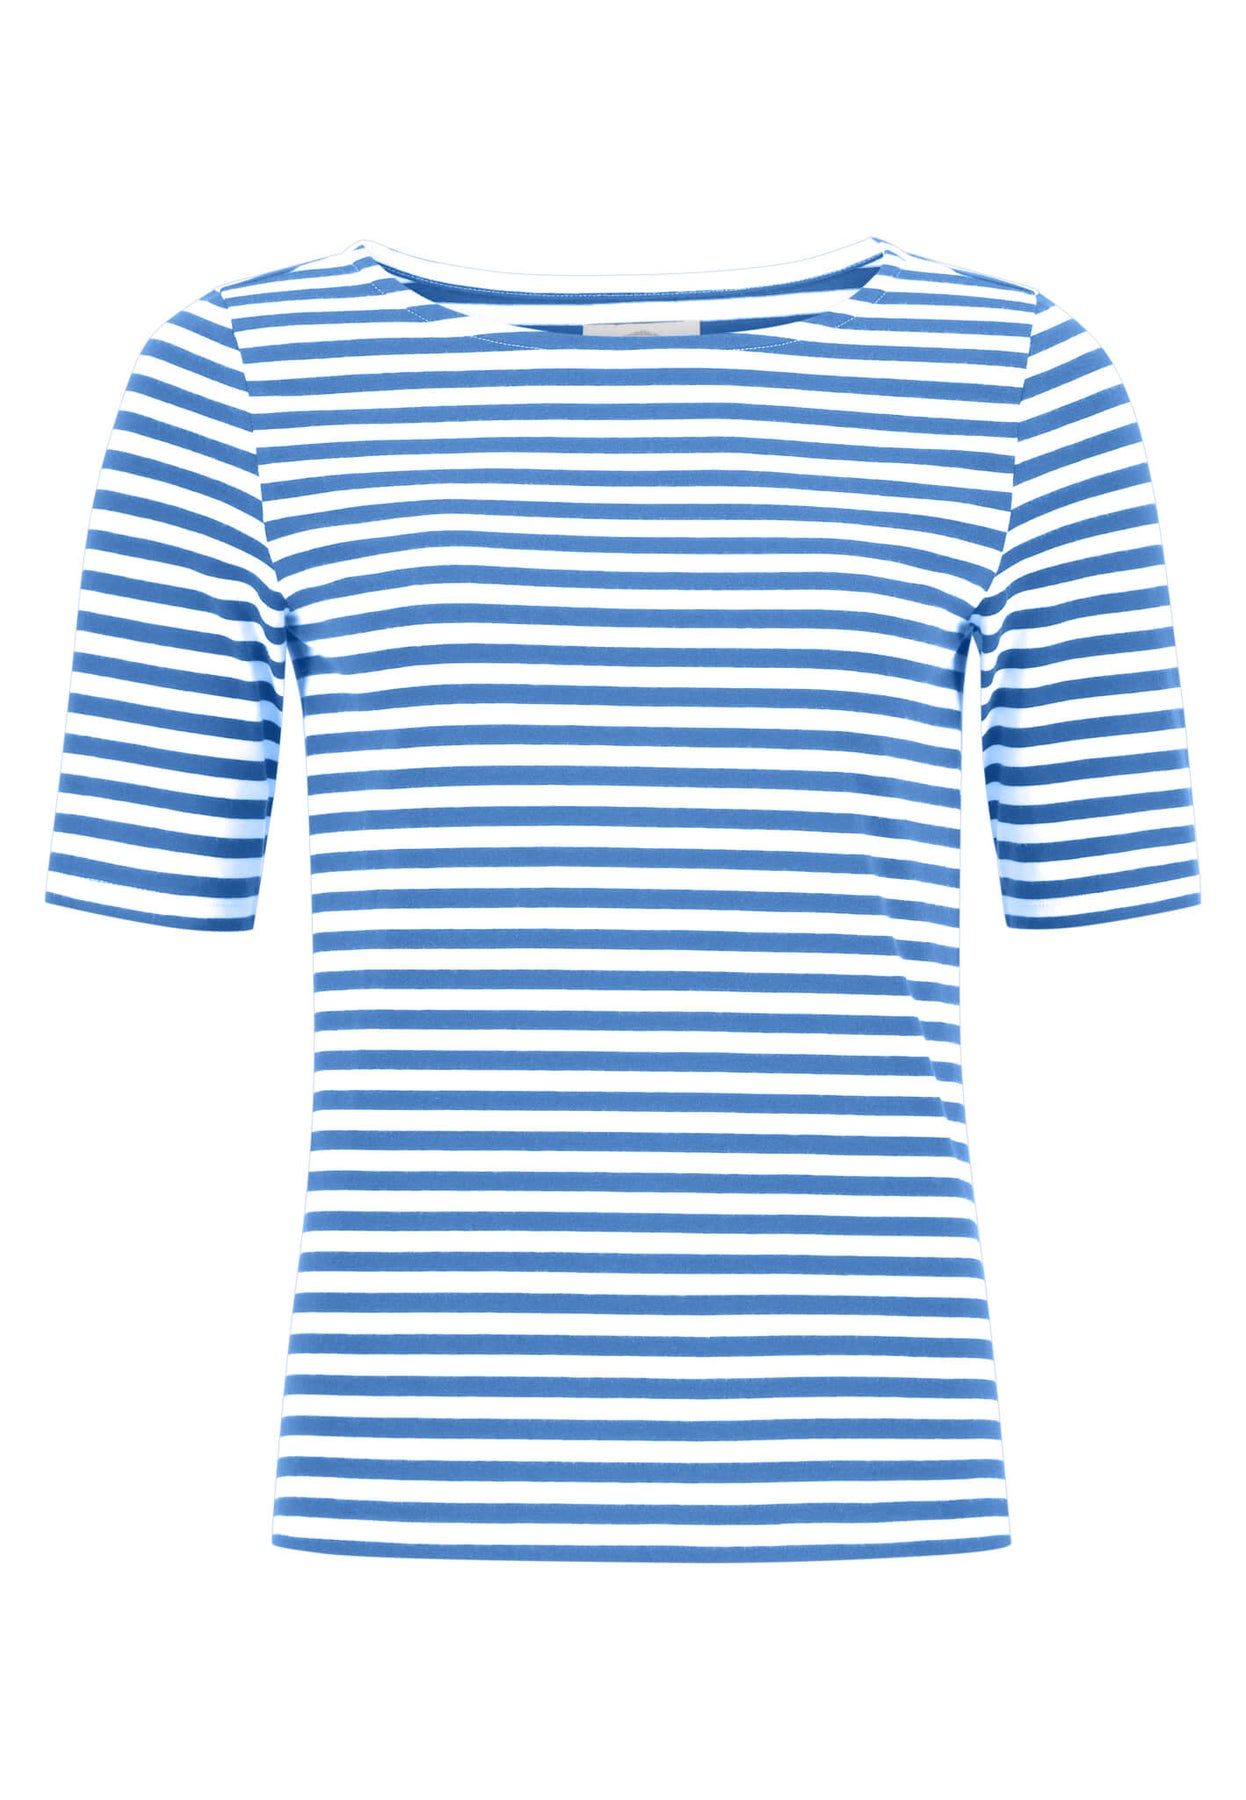 Online with stripes FYNCH-HATTON | Offizieller Shop maritime T-shirt –